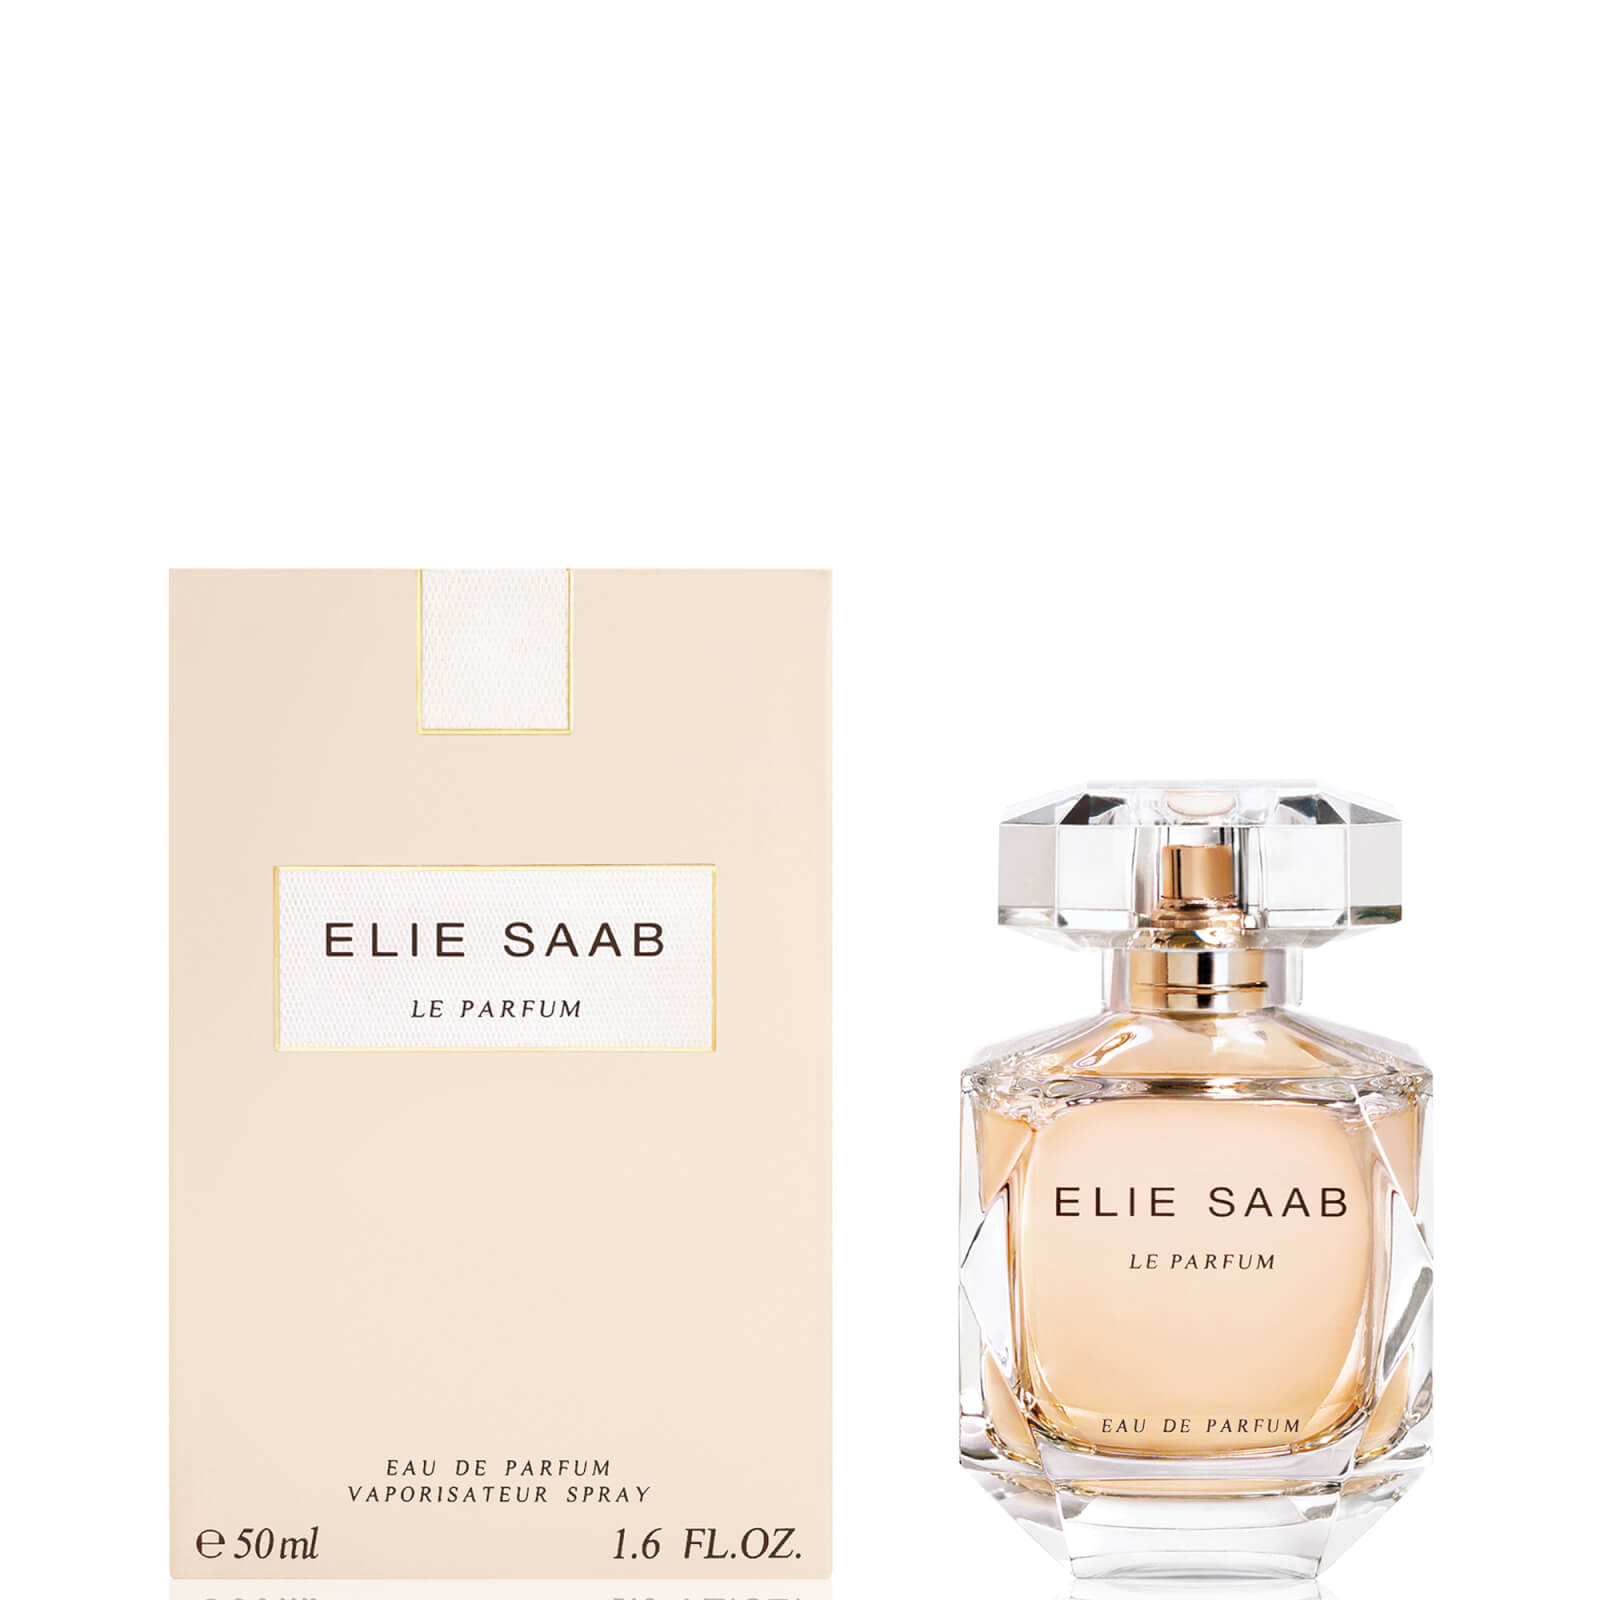 Photos - Women's Fragrance Elie Saab Le Parfum Eau de Parfum 50ml EL4112100 